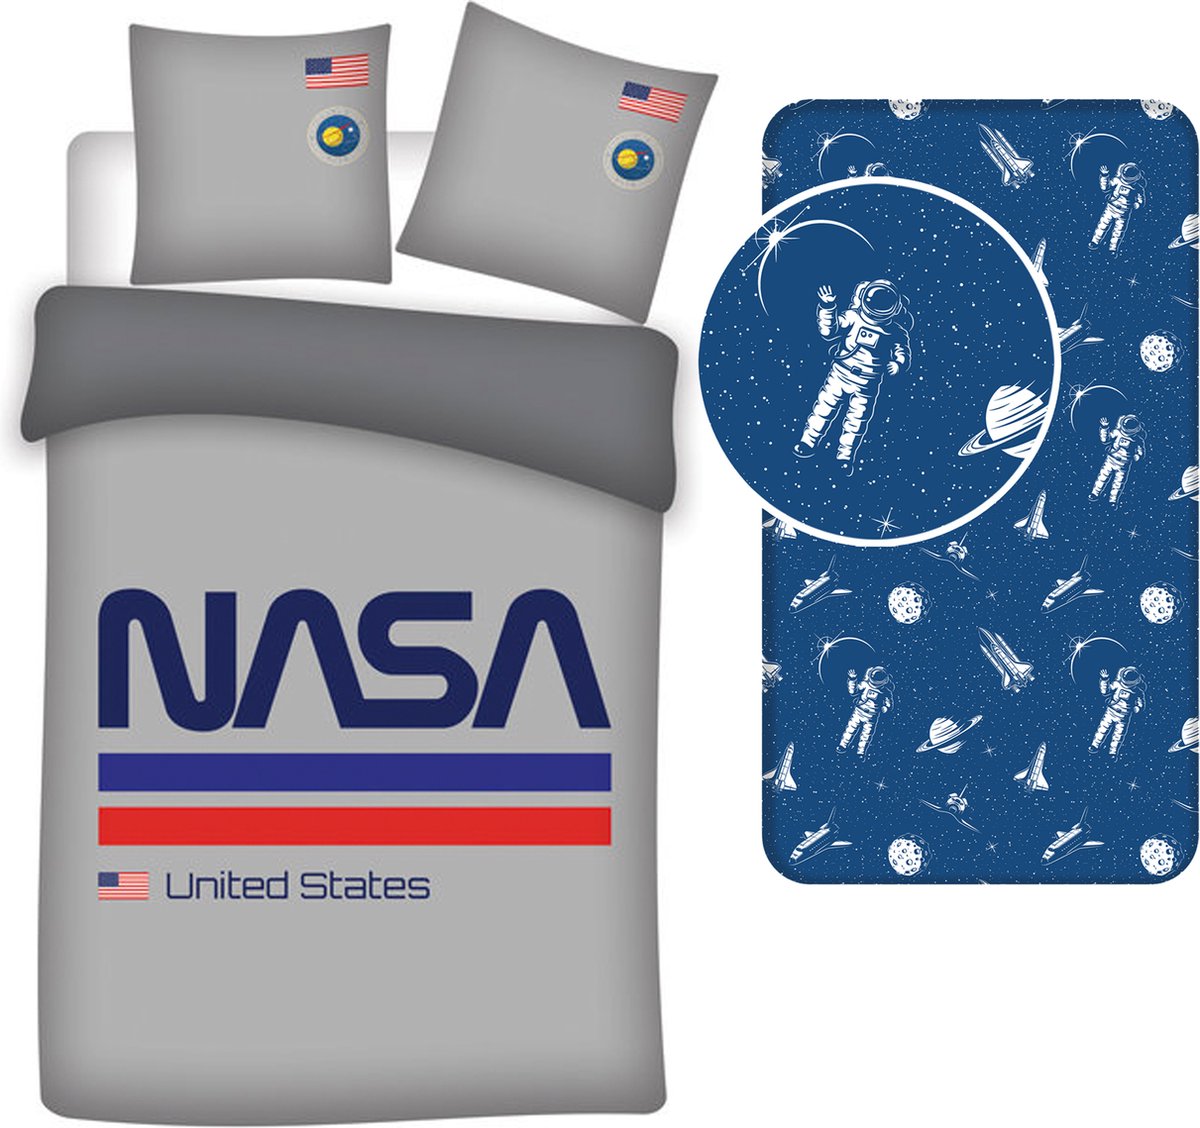 Dekbedovertrek NASA- ruimtevaart- 1persoons- 140x200cm- Polyester- incl. ruimtevaart hoeslaken- blauw- 90x200+25